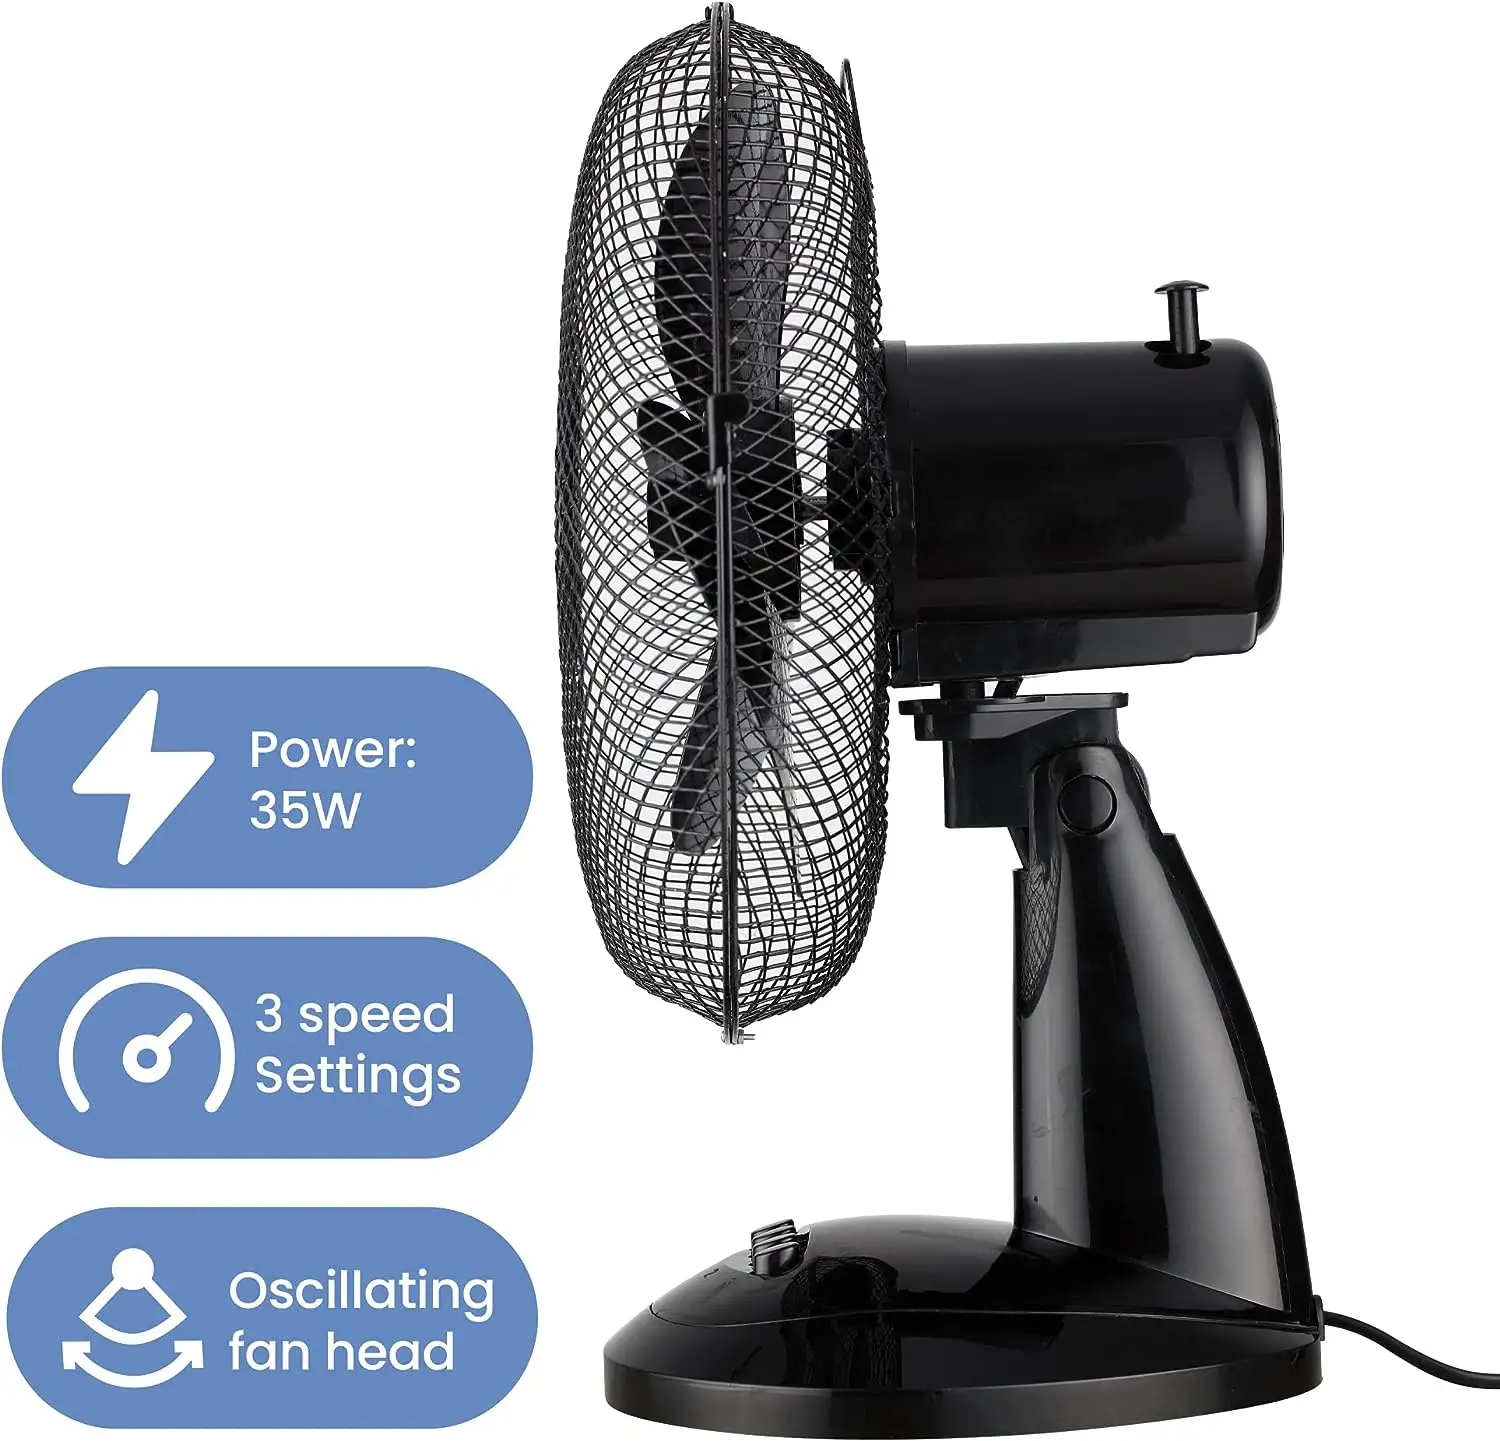 Sıcak satış 12 inç Mini taşınabilir masa fanı hafif AC elektrik 3 hızları ile hava soğutma mekanik kontrol ofis ev kullanımı